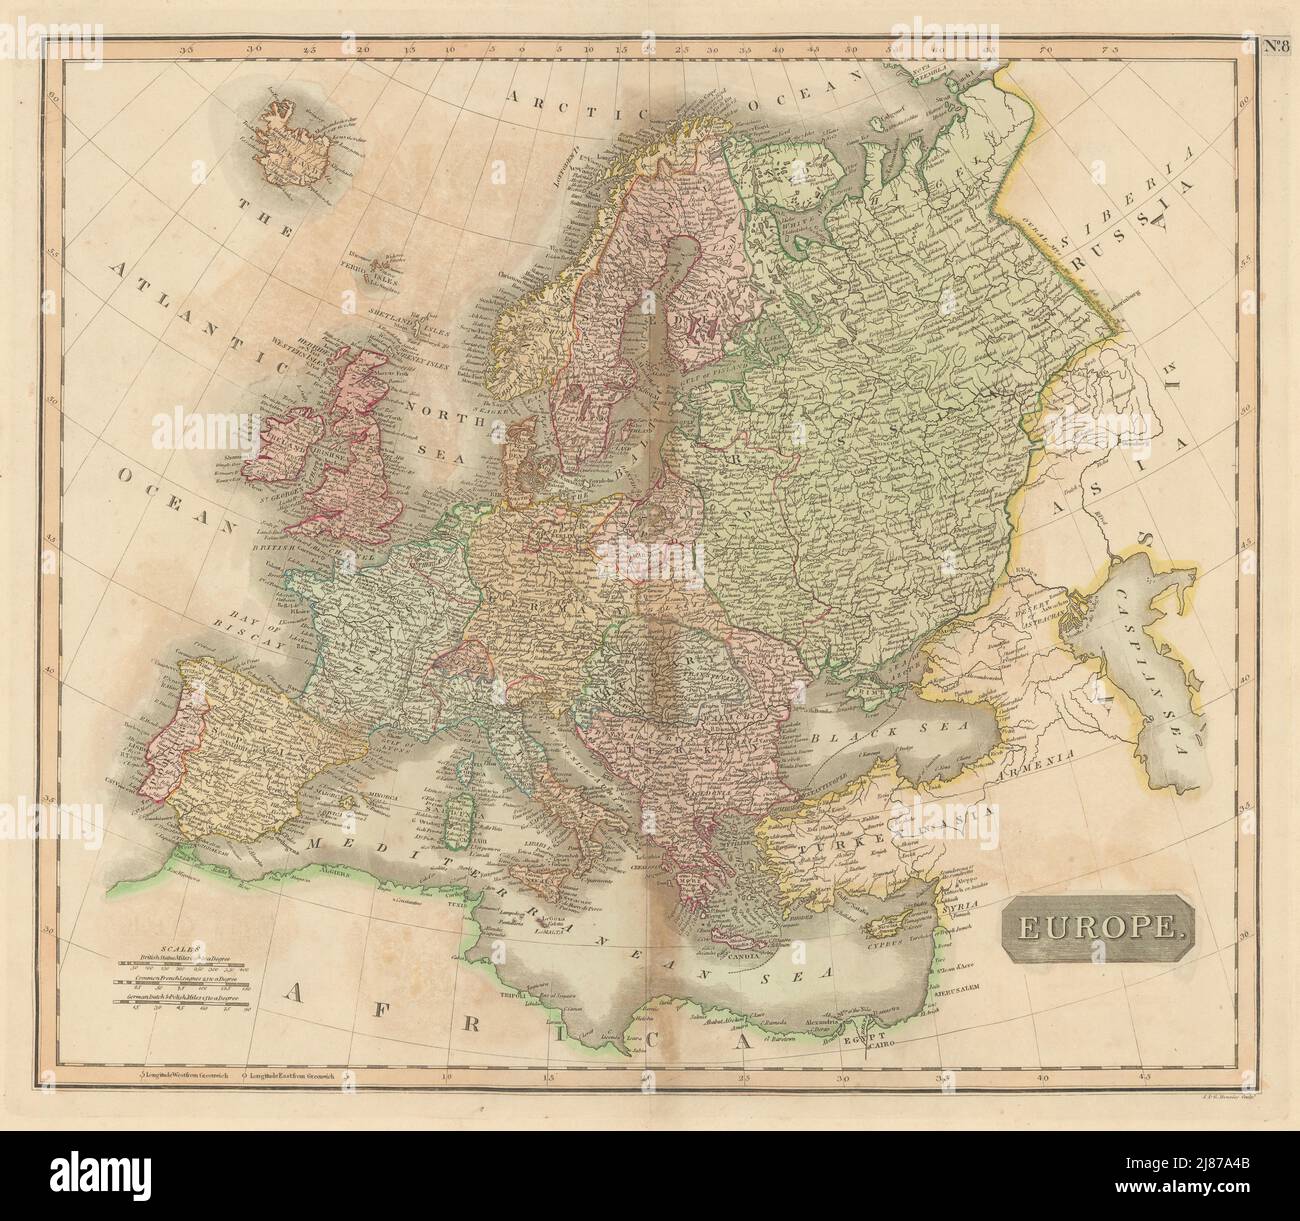 Début du XIXe siècle 'Europe' par John Thomson 1817 ancien antique carte de plan Banque D'Images